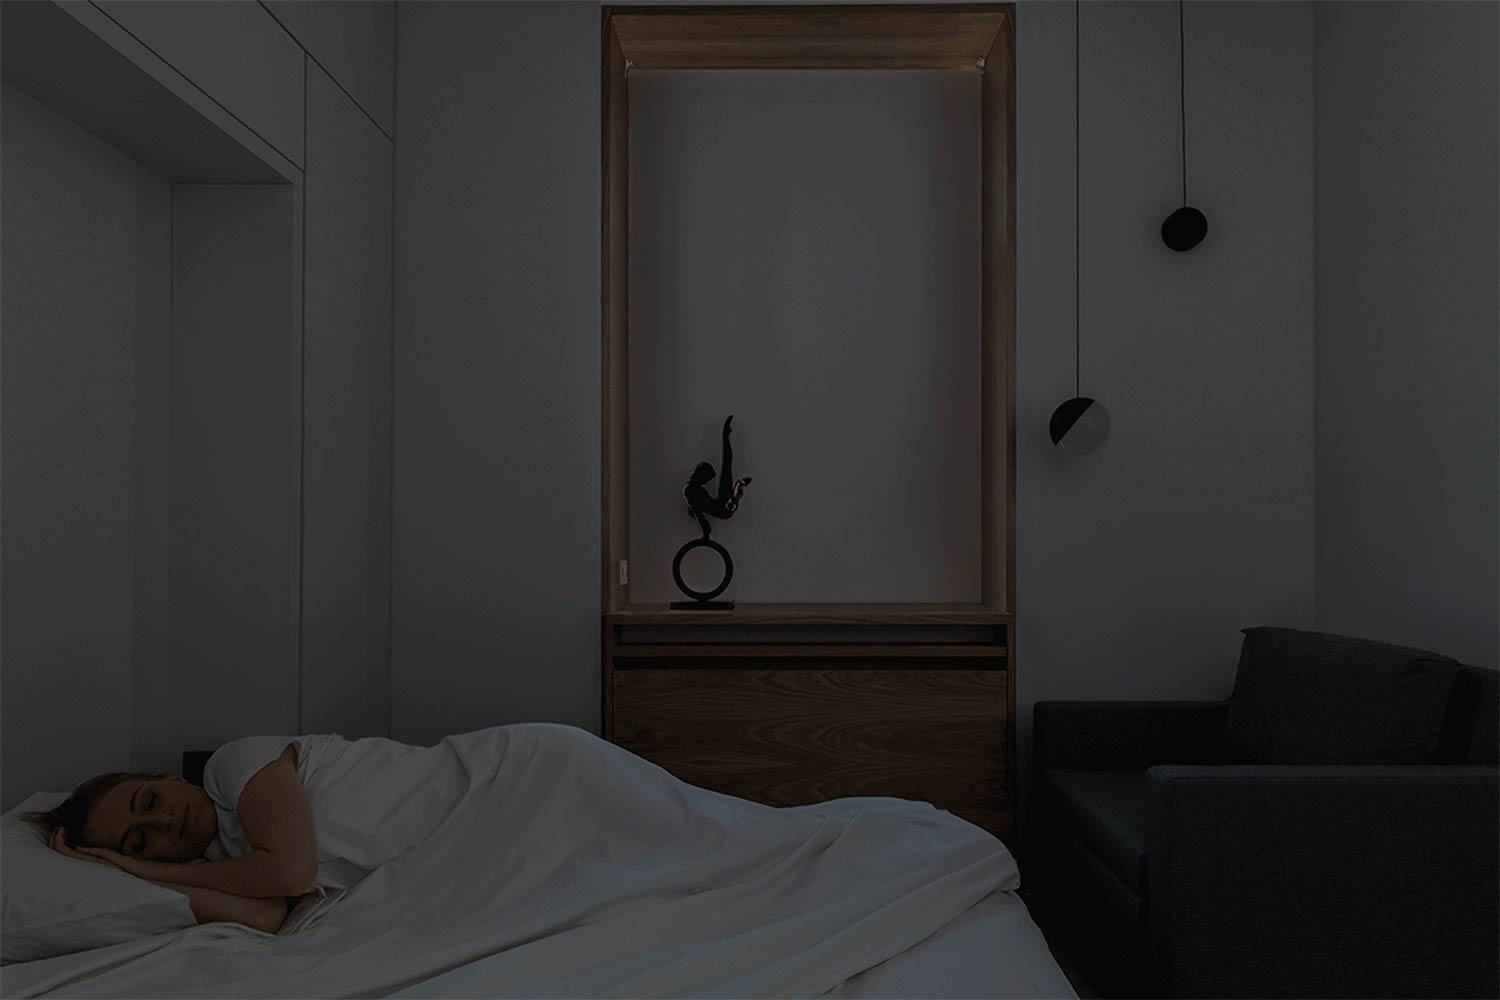 Chiếc giường ngủ được 'giấu kín' trên bức tường sau ghế nên khó ai có thể nhận ra khi mà chủ nhân chưa thực hiện thao tác chuyển đổi khi màn đêm buông xuống.